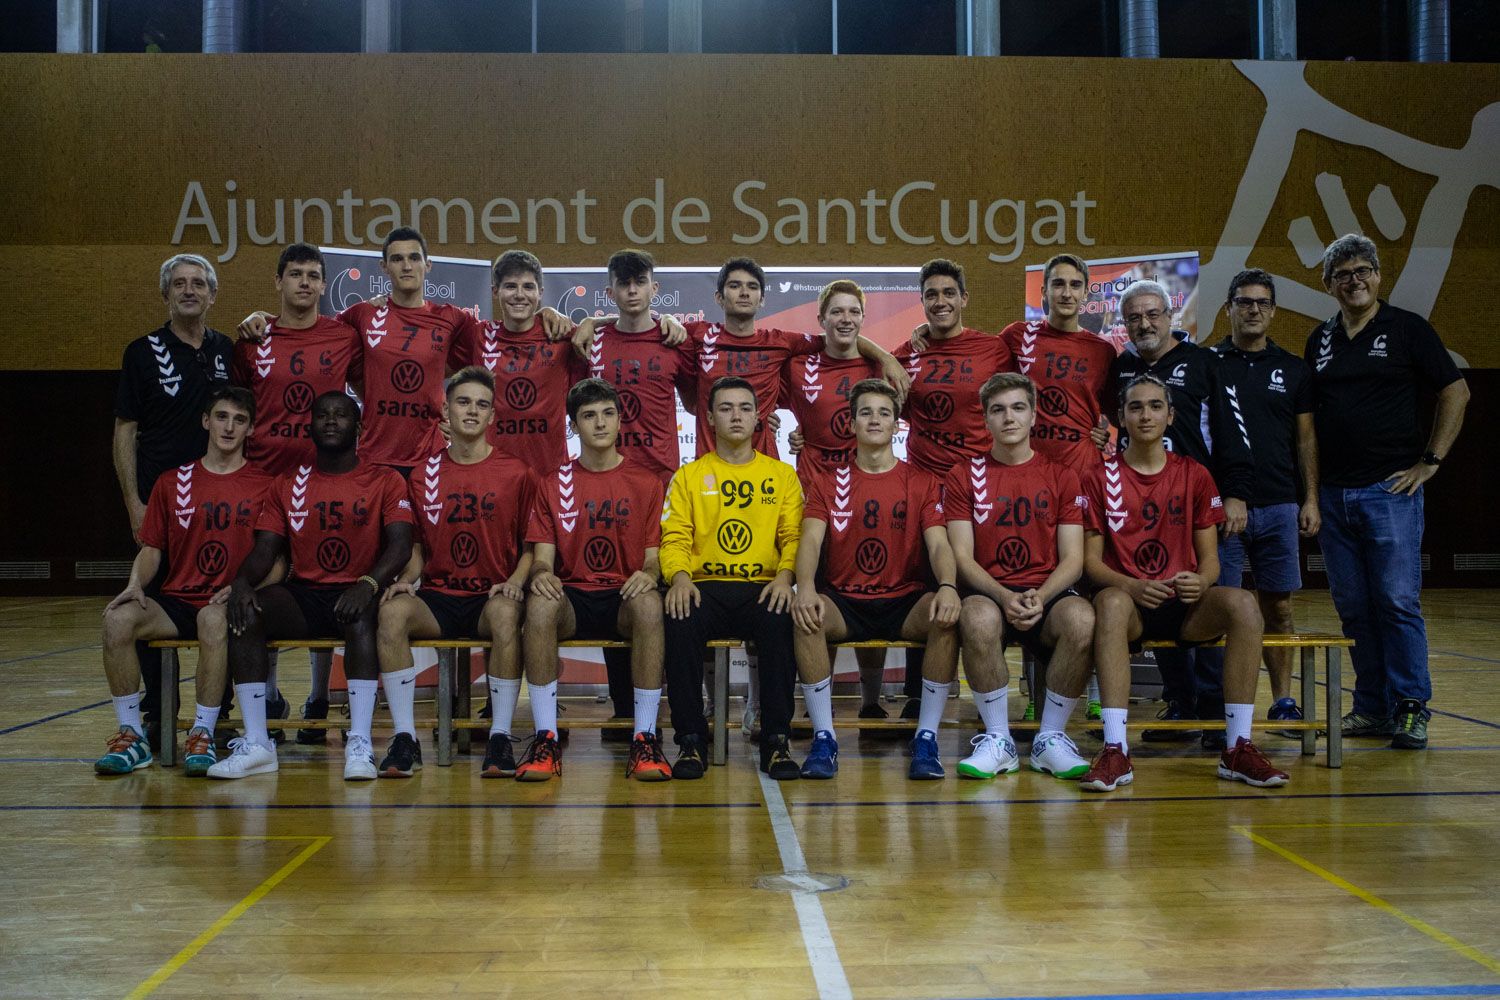 Presentació d'equips Club Handbol Sant Cugat. Foto: Adrián Gómez